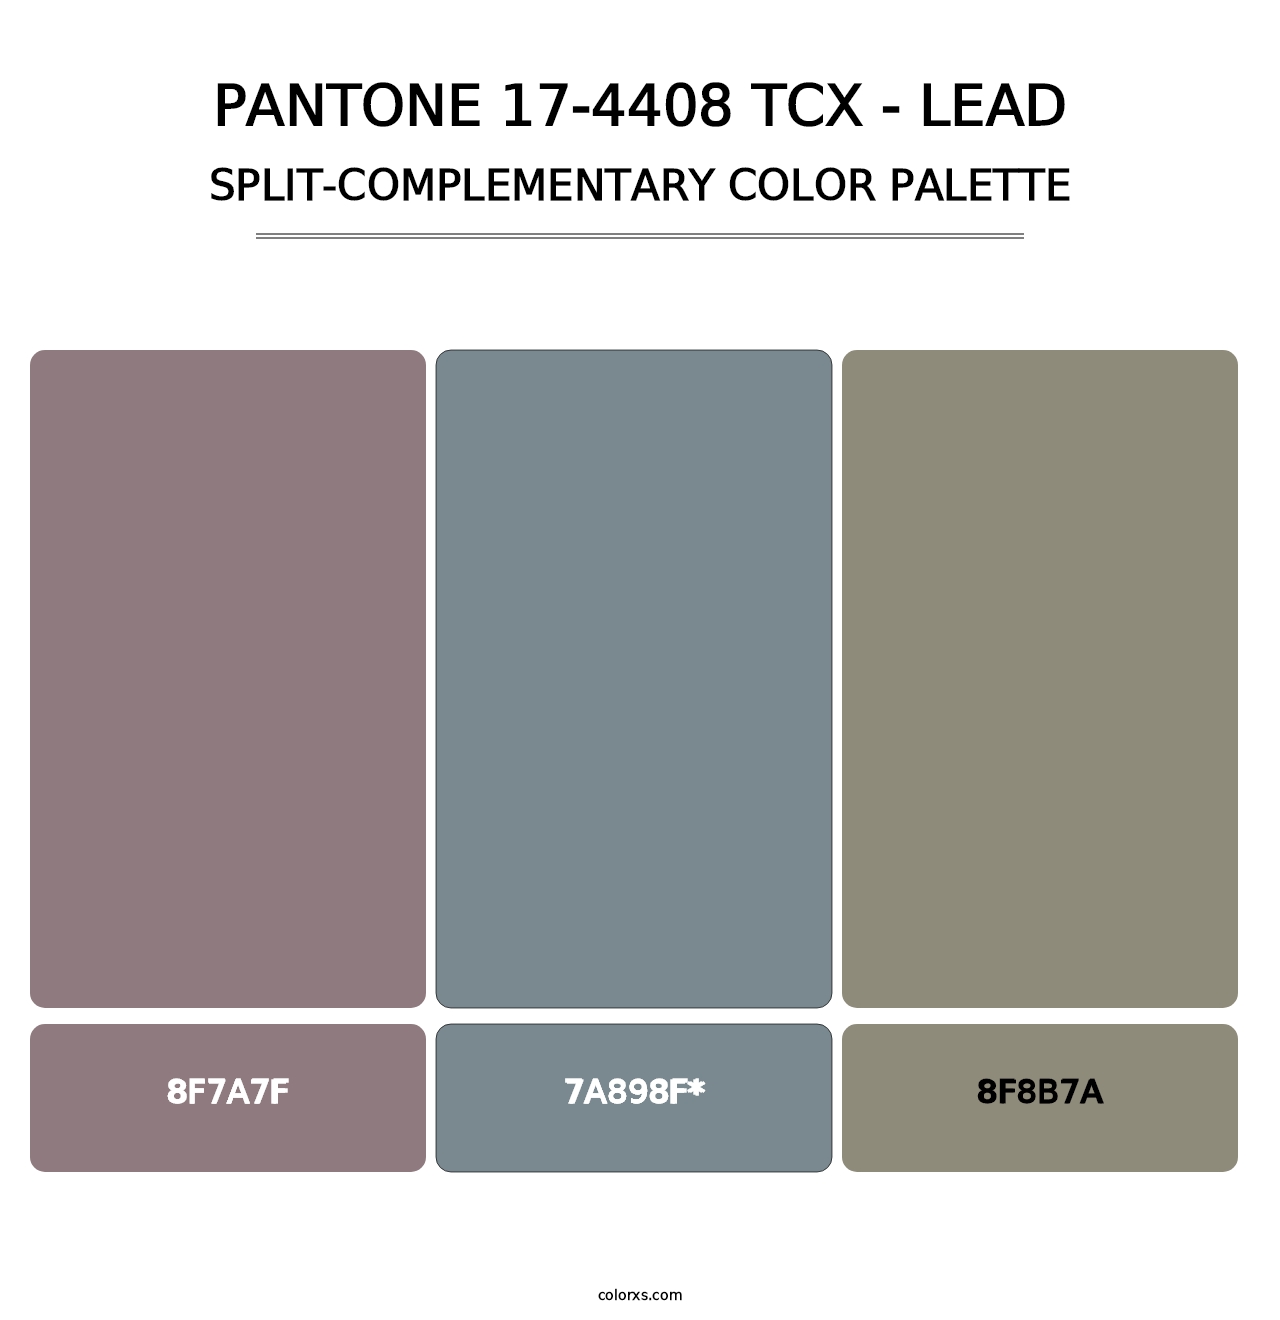 PANTONE 17-4408 TCX - Lead - Split-Complementary Color Palette